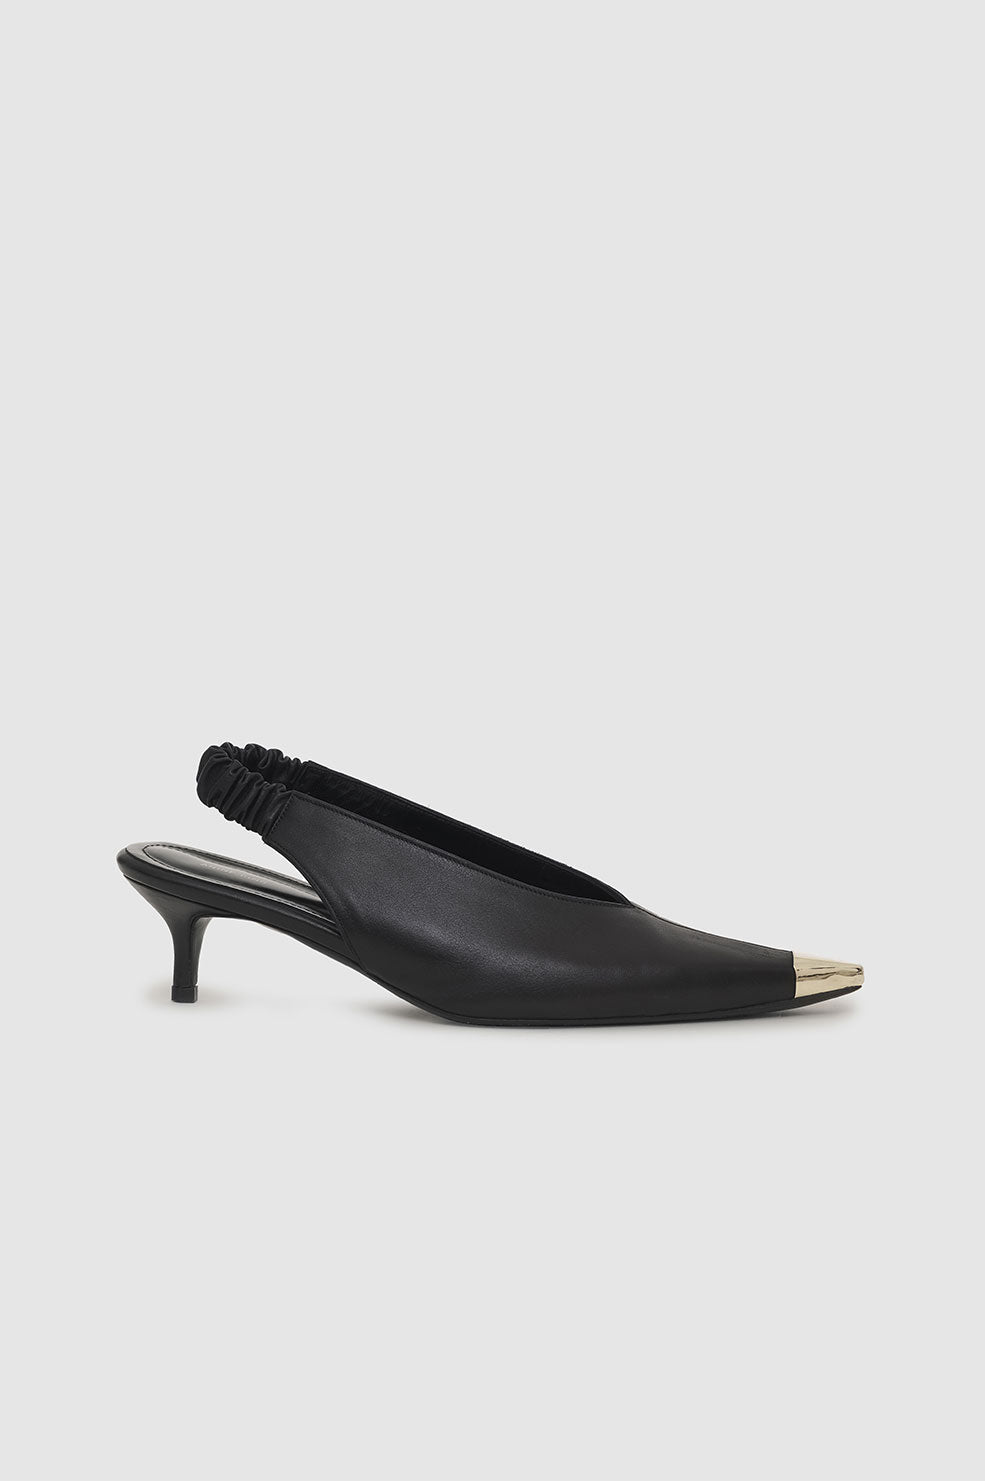 ANINE BING Nina Heels With Metal Toe Cap - Black - Side Single pair